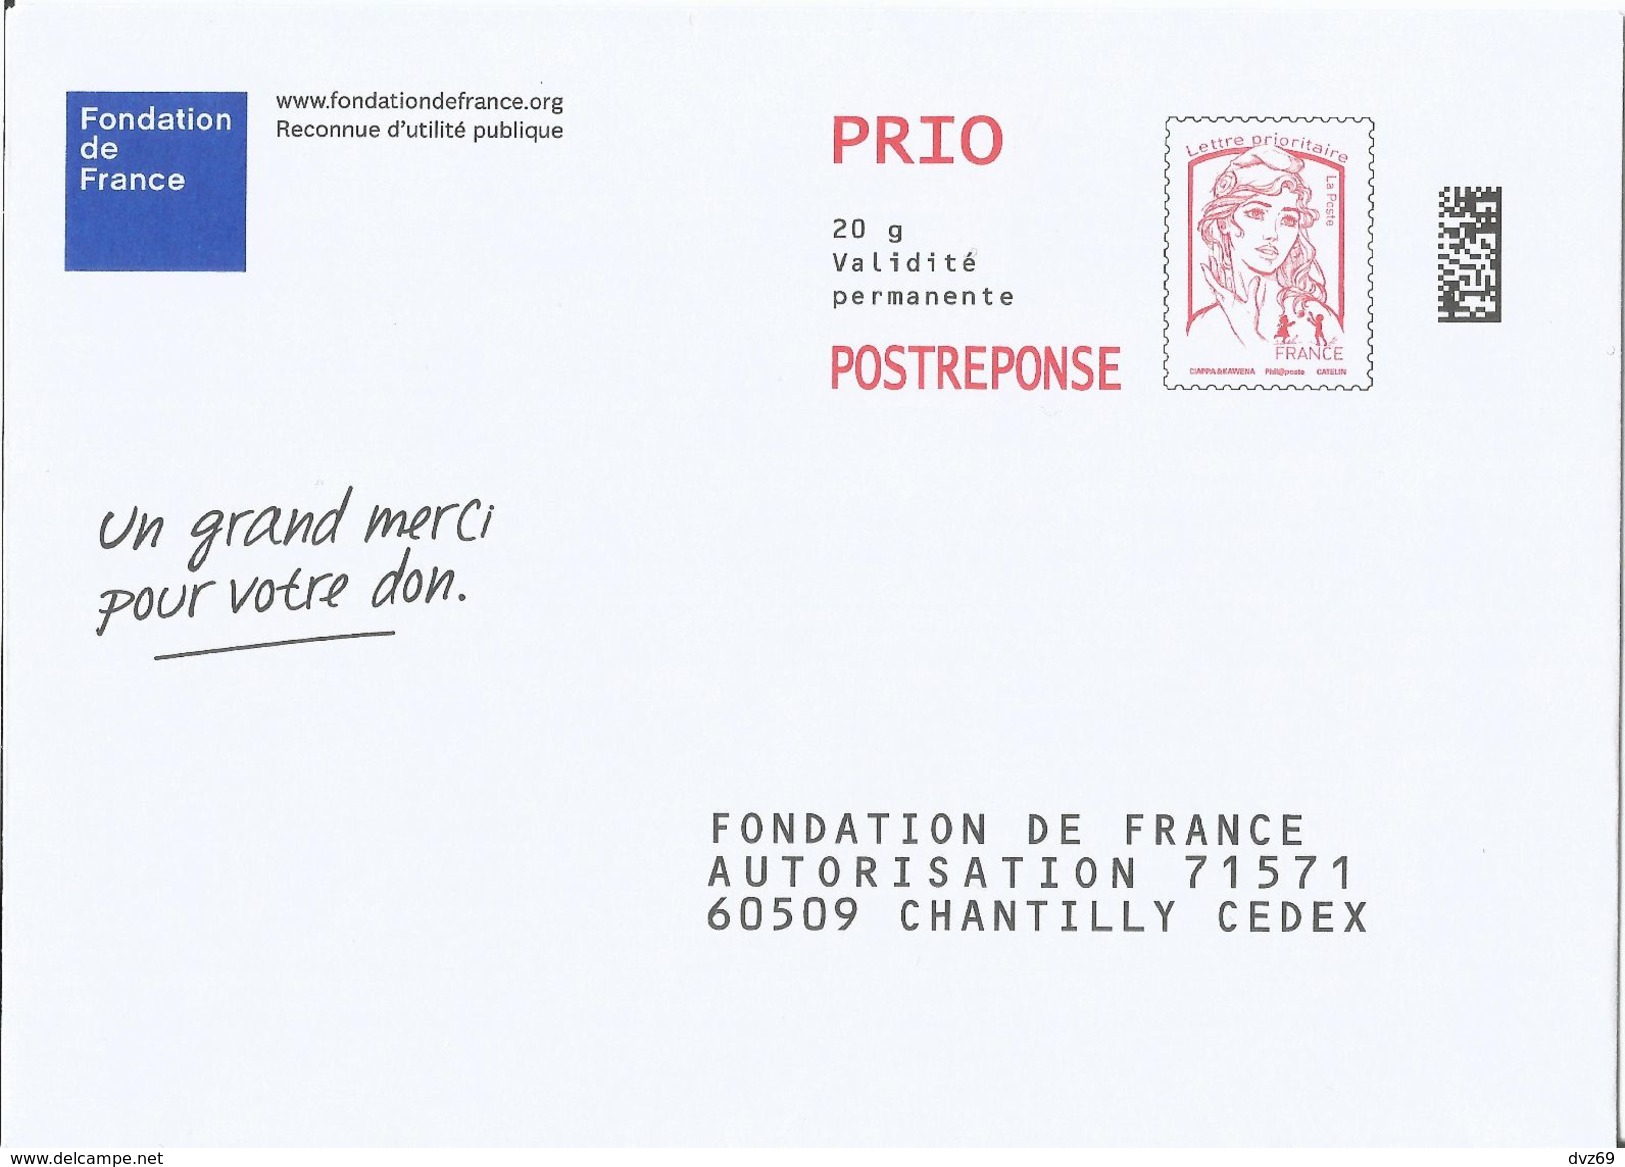 Fondation De France, Enveloppe Neuve, PostReponse 20g PRIO, Validité Permanente - Prêts-à-poster: Réponse /Ciappa-Kavena